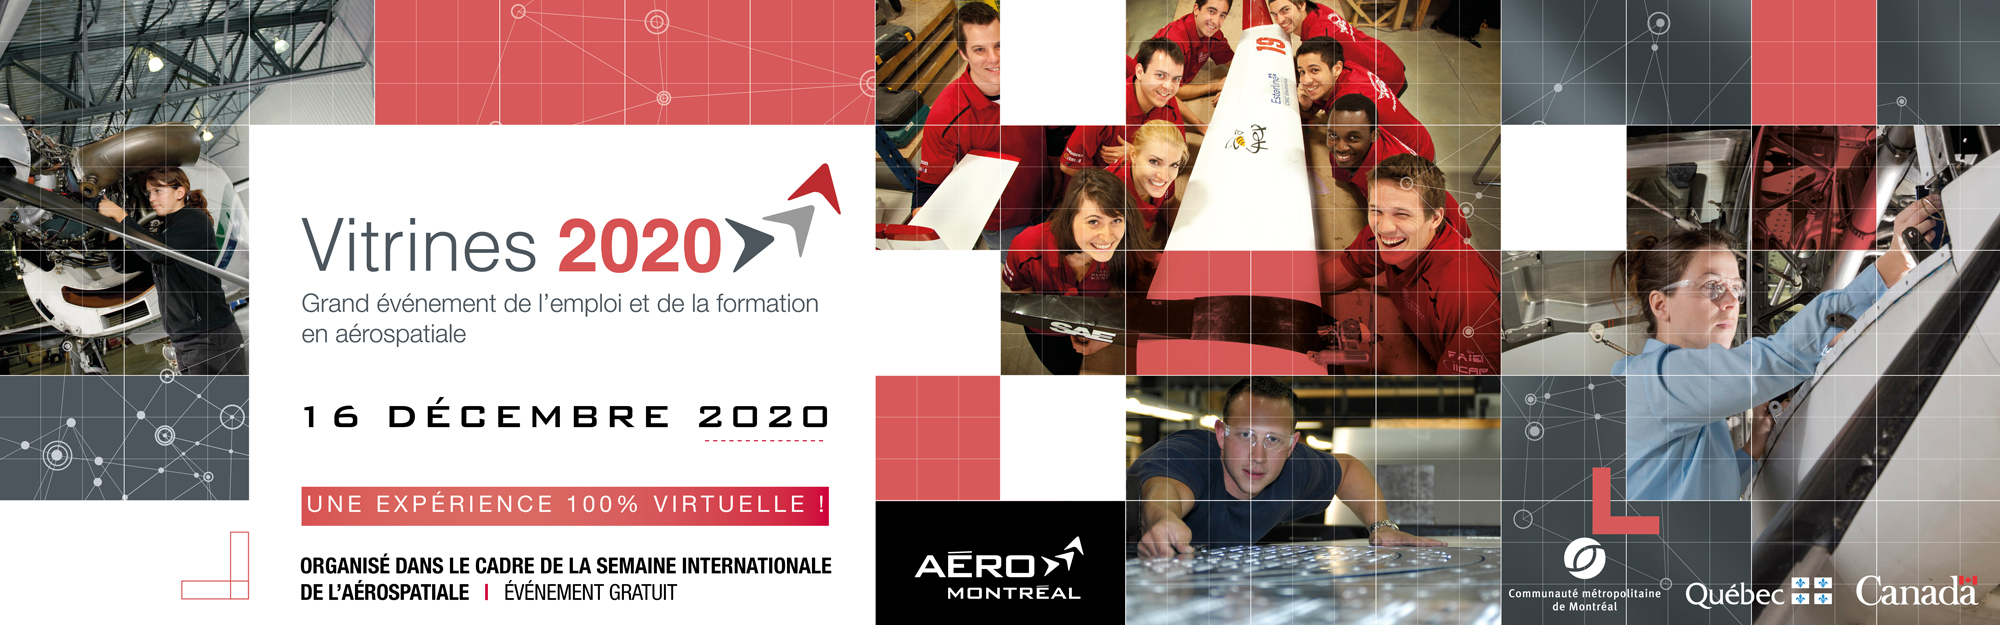 Vitrines 2020 : Grand événement de l’emploi et de la formation en aérospatiale